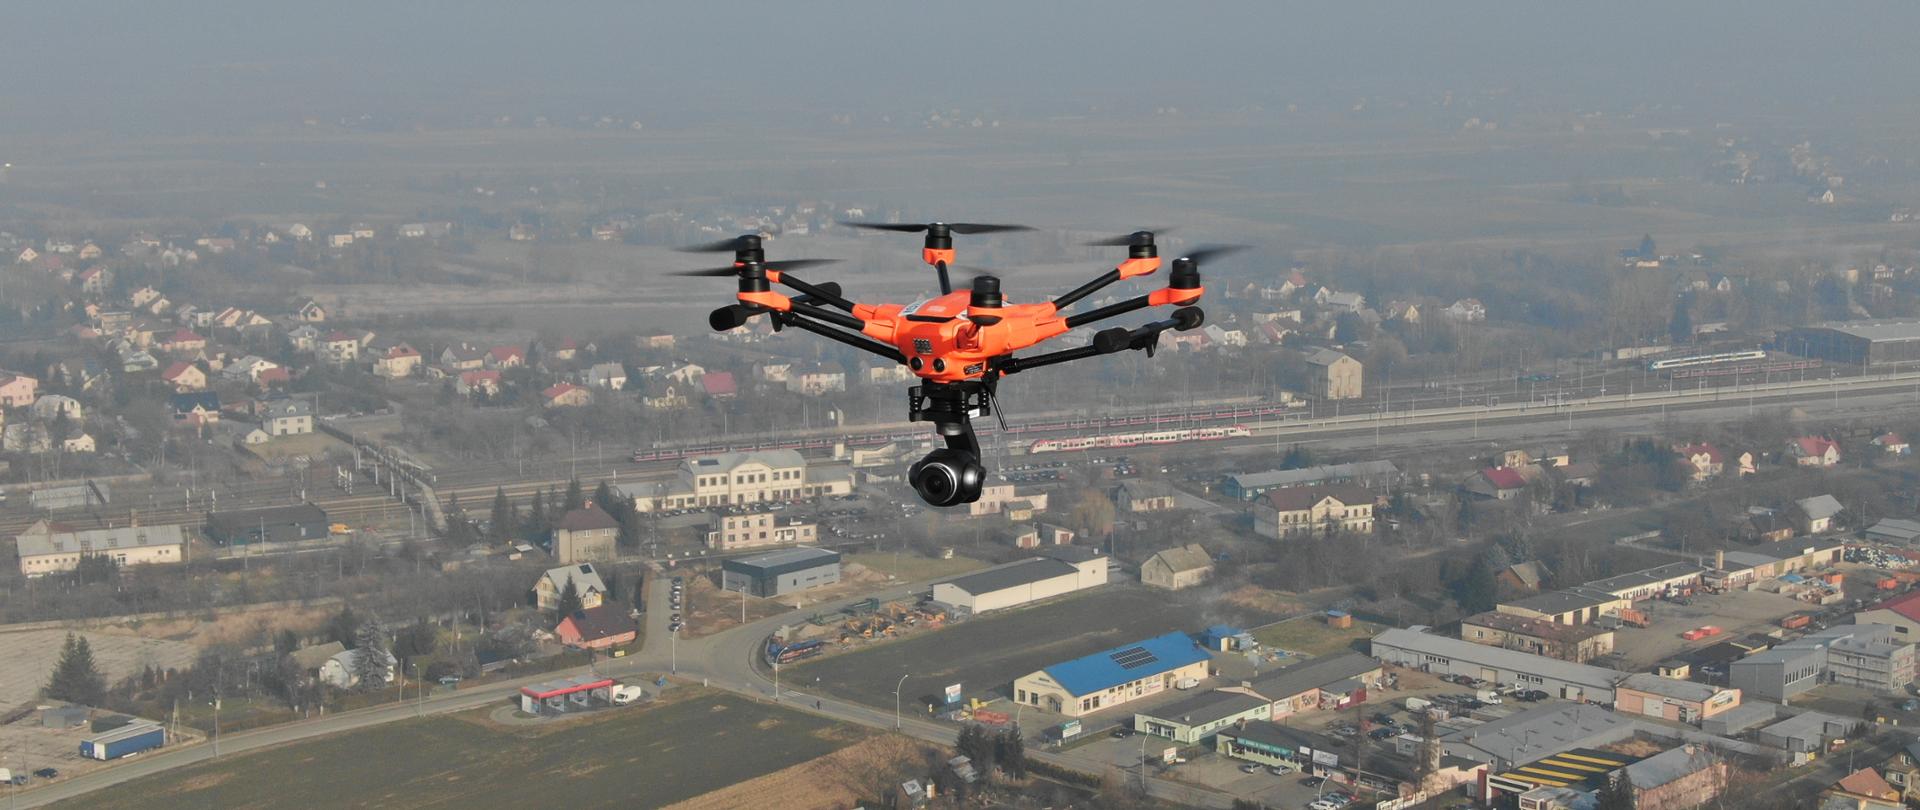 Zdjęcie robione w powietrzu przedstawia sześciowirnikowego lecącego drona z kamerą w kształcie kuli podwieszoną u dołu. W tle lekko zamglony kadr miasta z widoczną linią kolejową i dwoma pociągami osobowymi stojącymi na stacji.